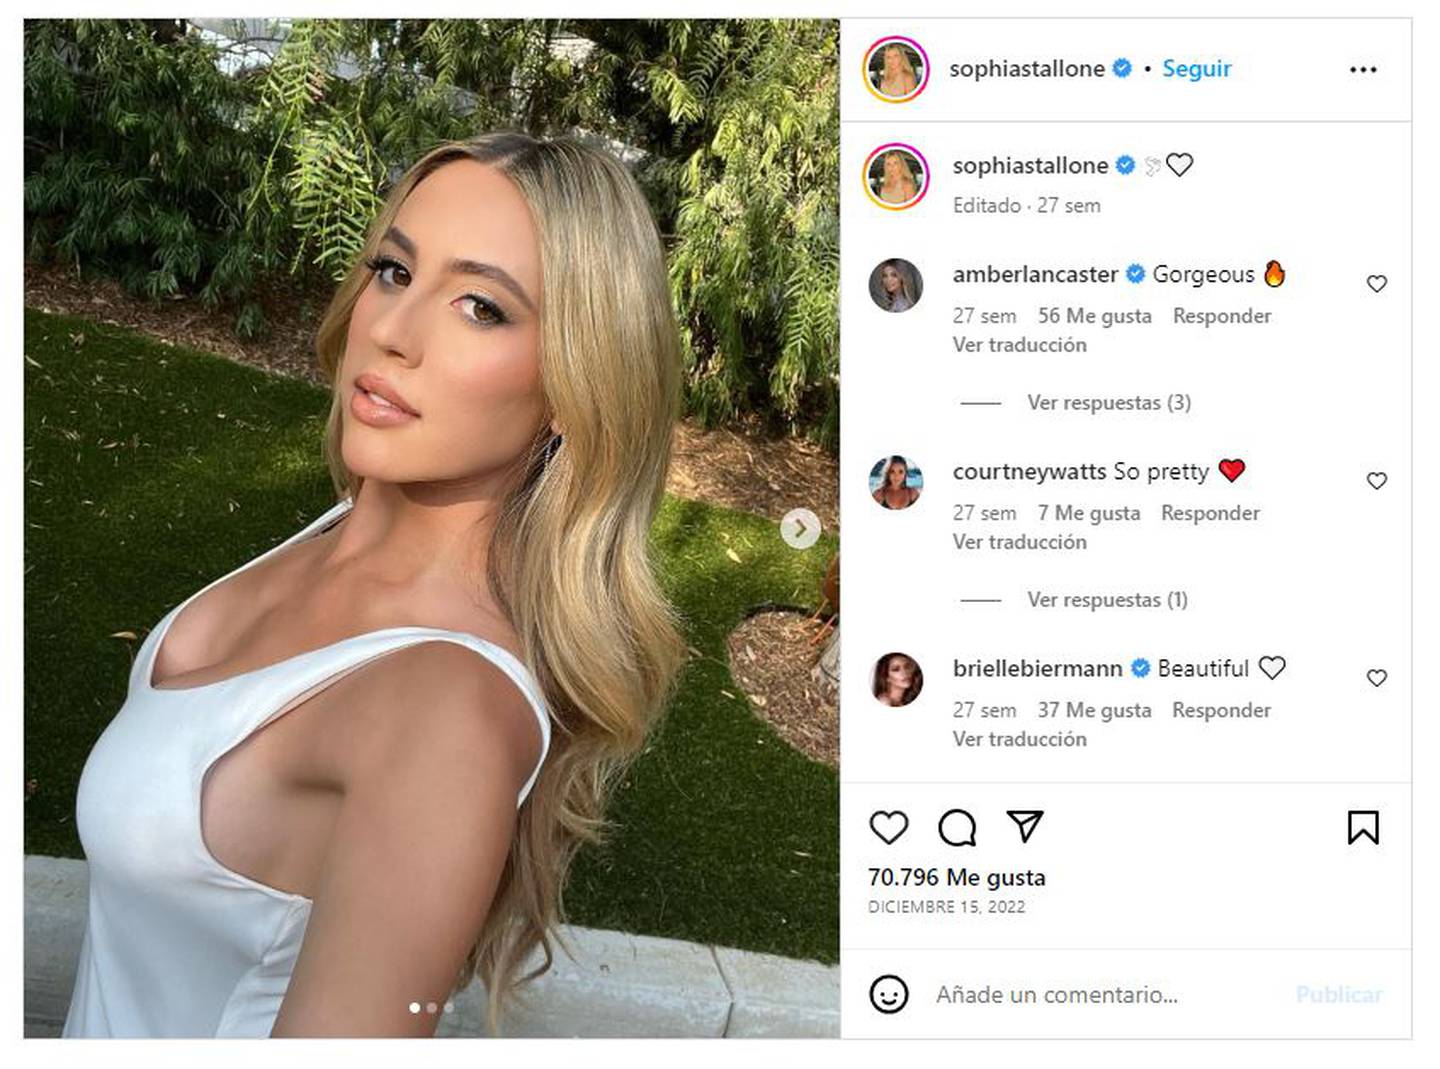 Sophia Rose Stallone tiene casi un millón de seguidores en Instagram